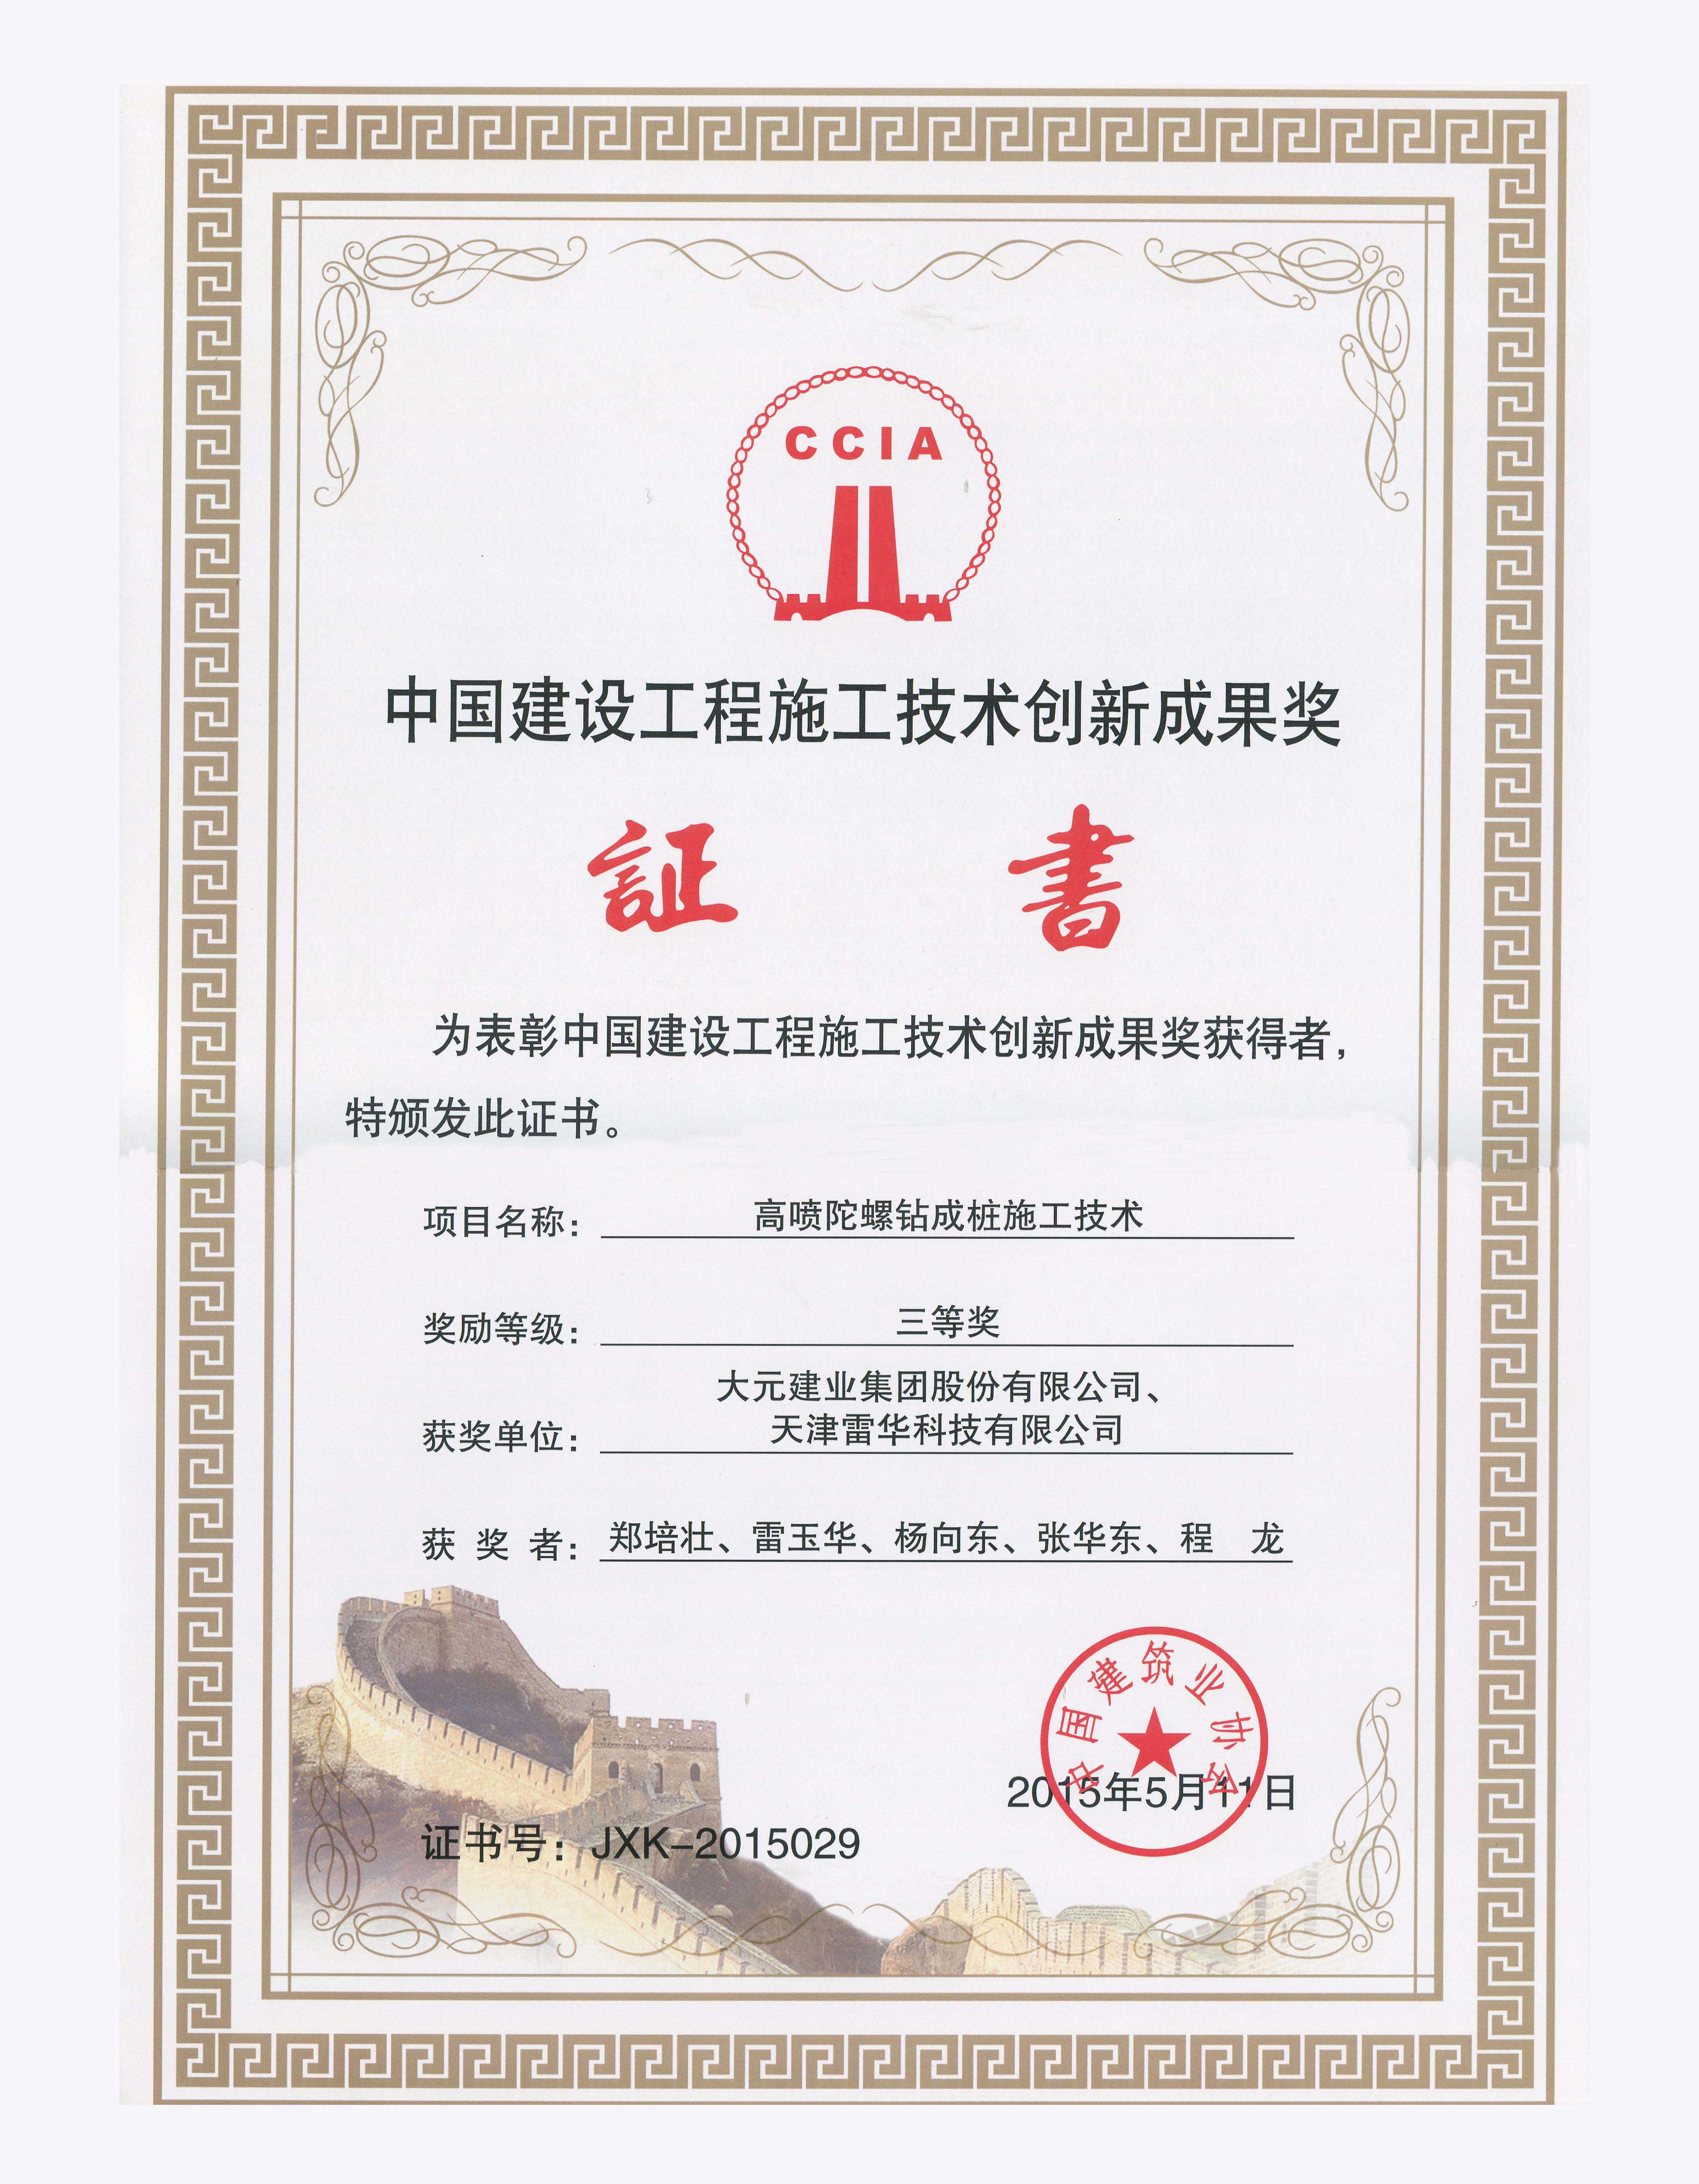 大元集团荣获“首届中国建设工程施工技术创新成果奖”